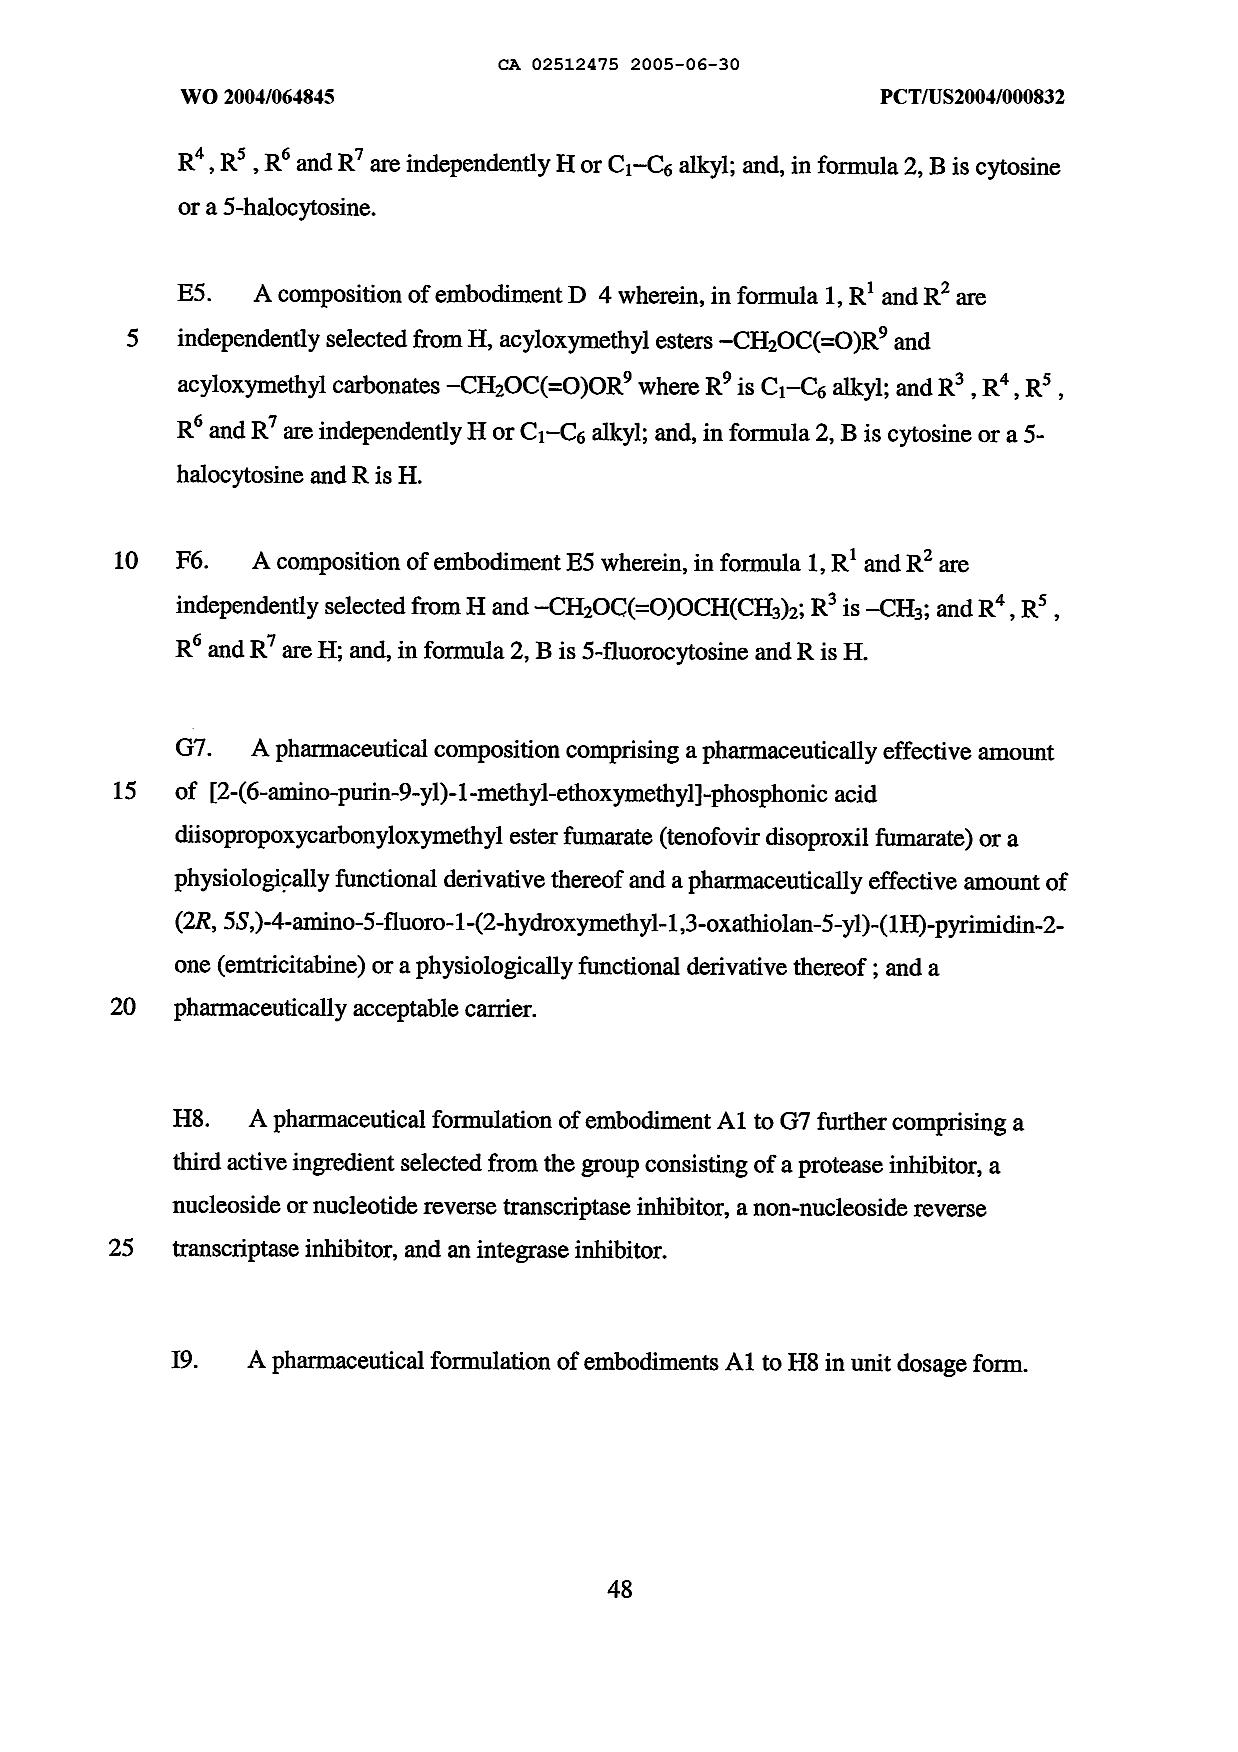 Canadian Patent Document 2512475. Description 20041230. Image 48 of 49